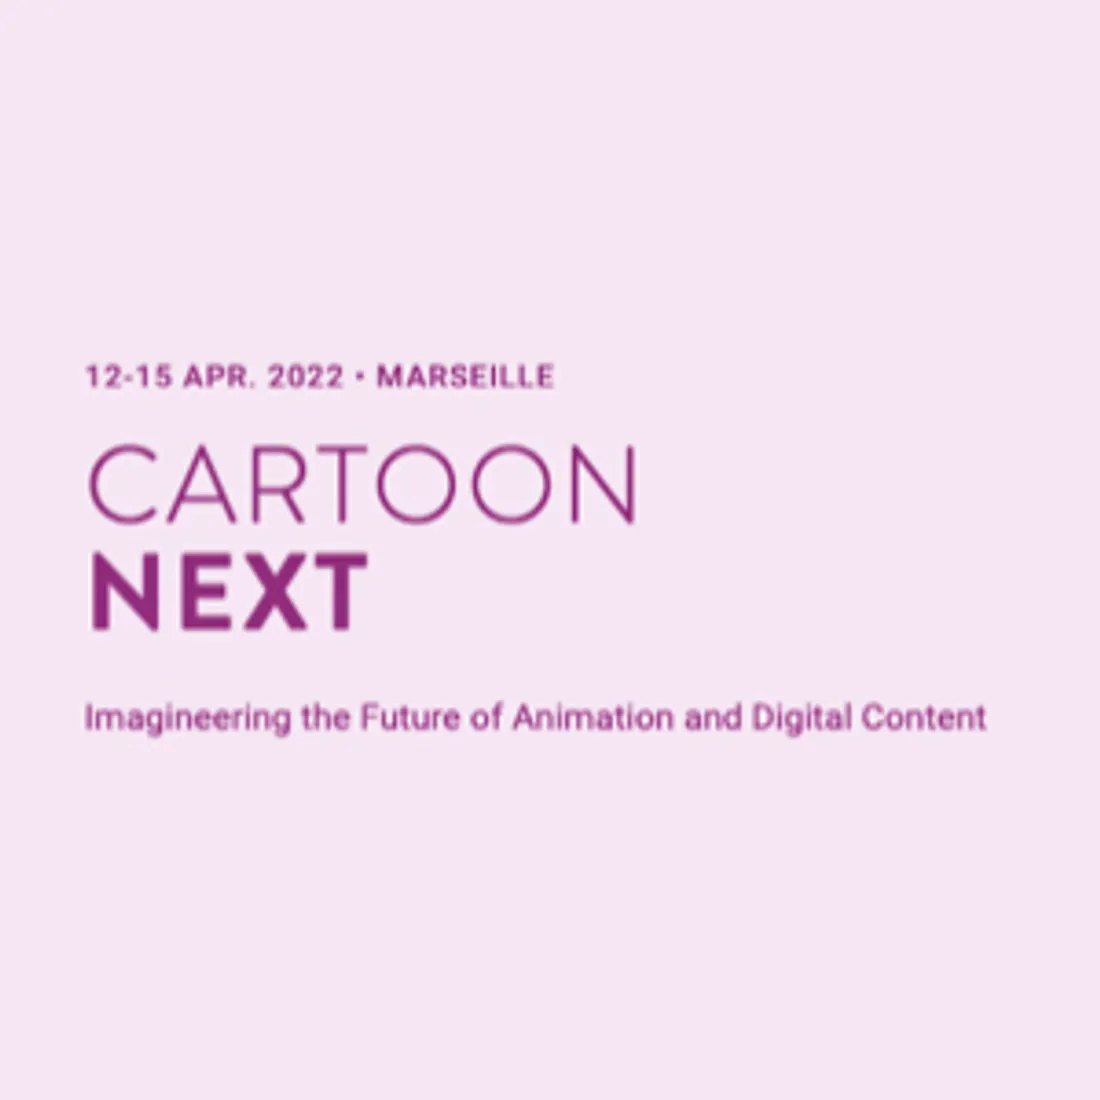 [ SOCIÉTÉ / LOISIRS ]: Les professionnels de l'animation auront bientôt rendez-vous à Marseille !